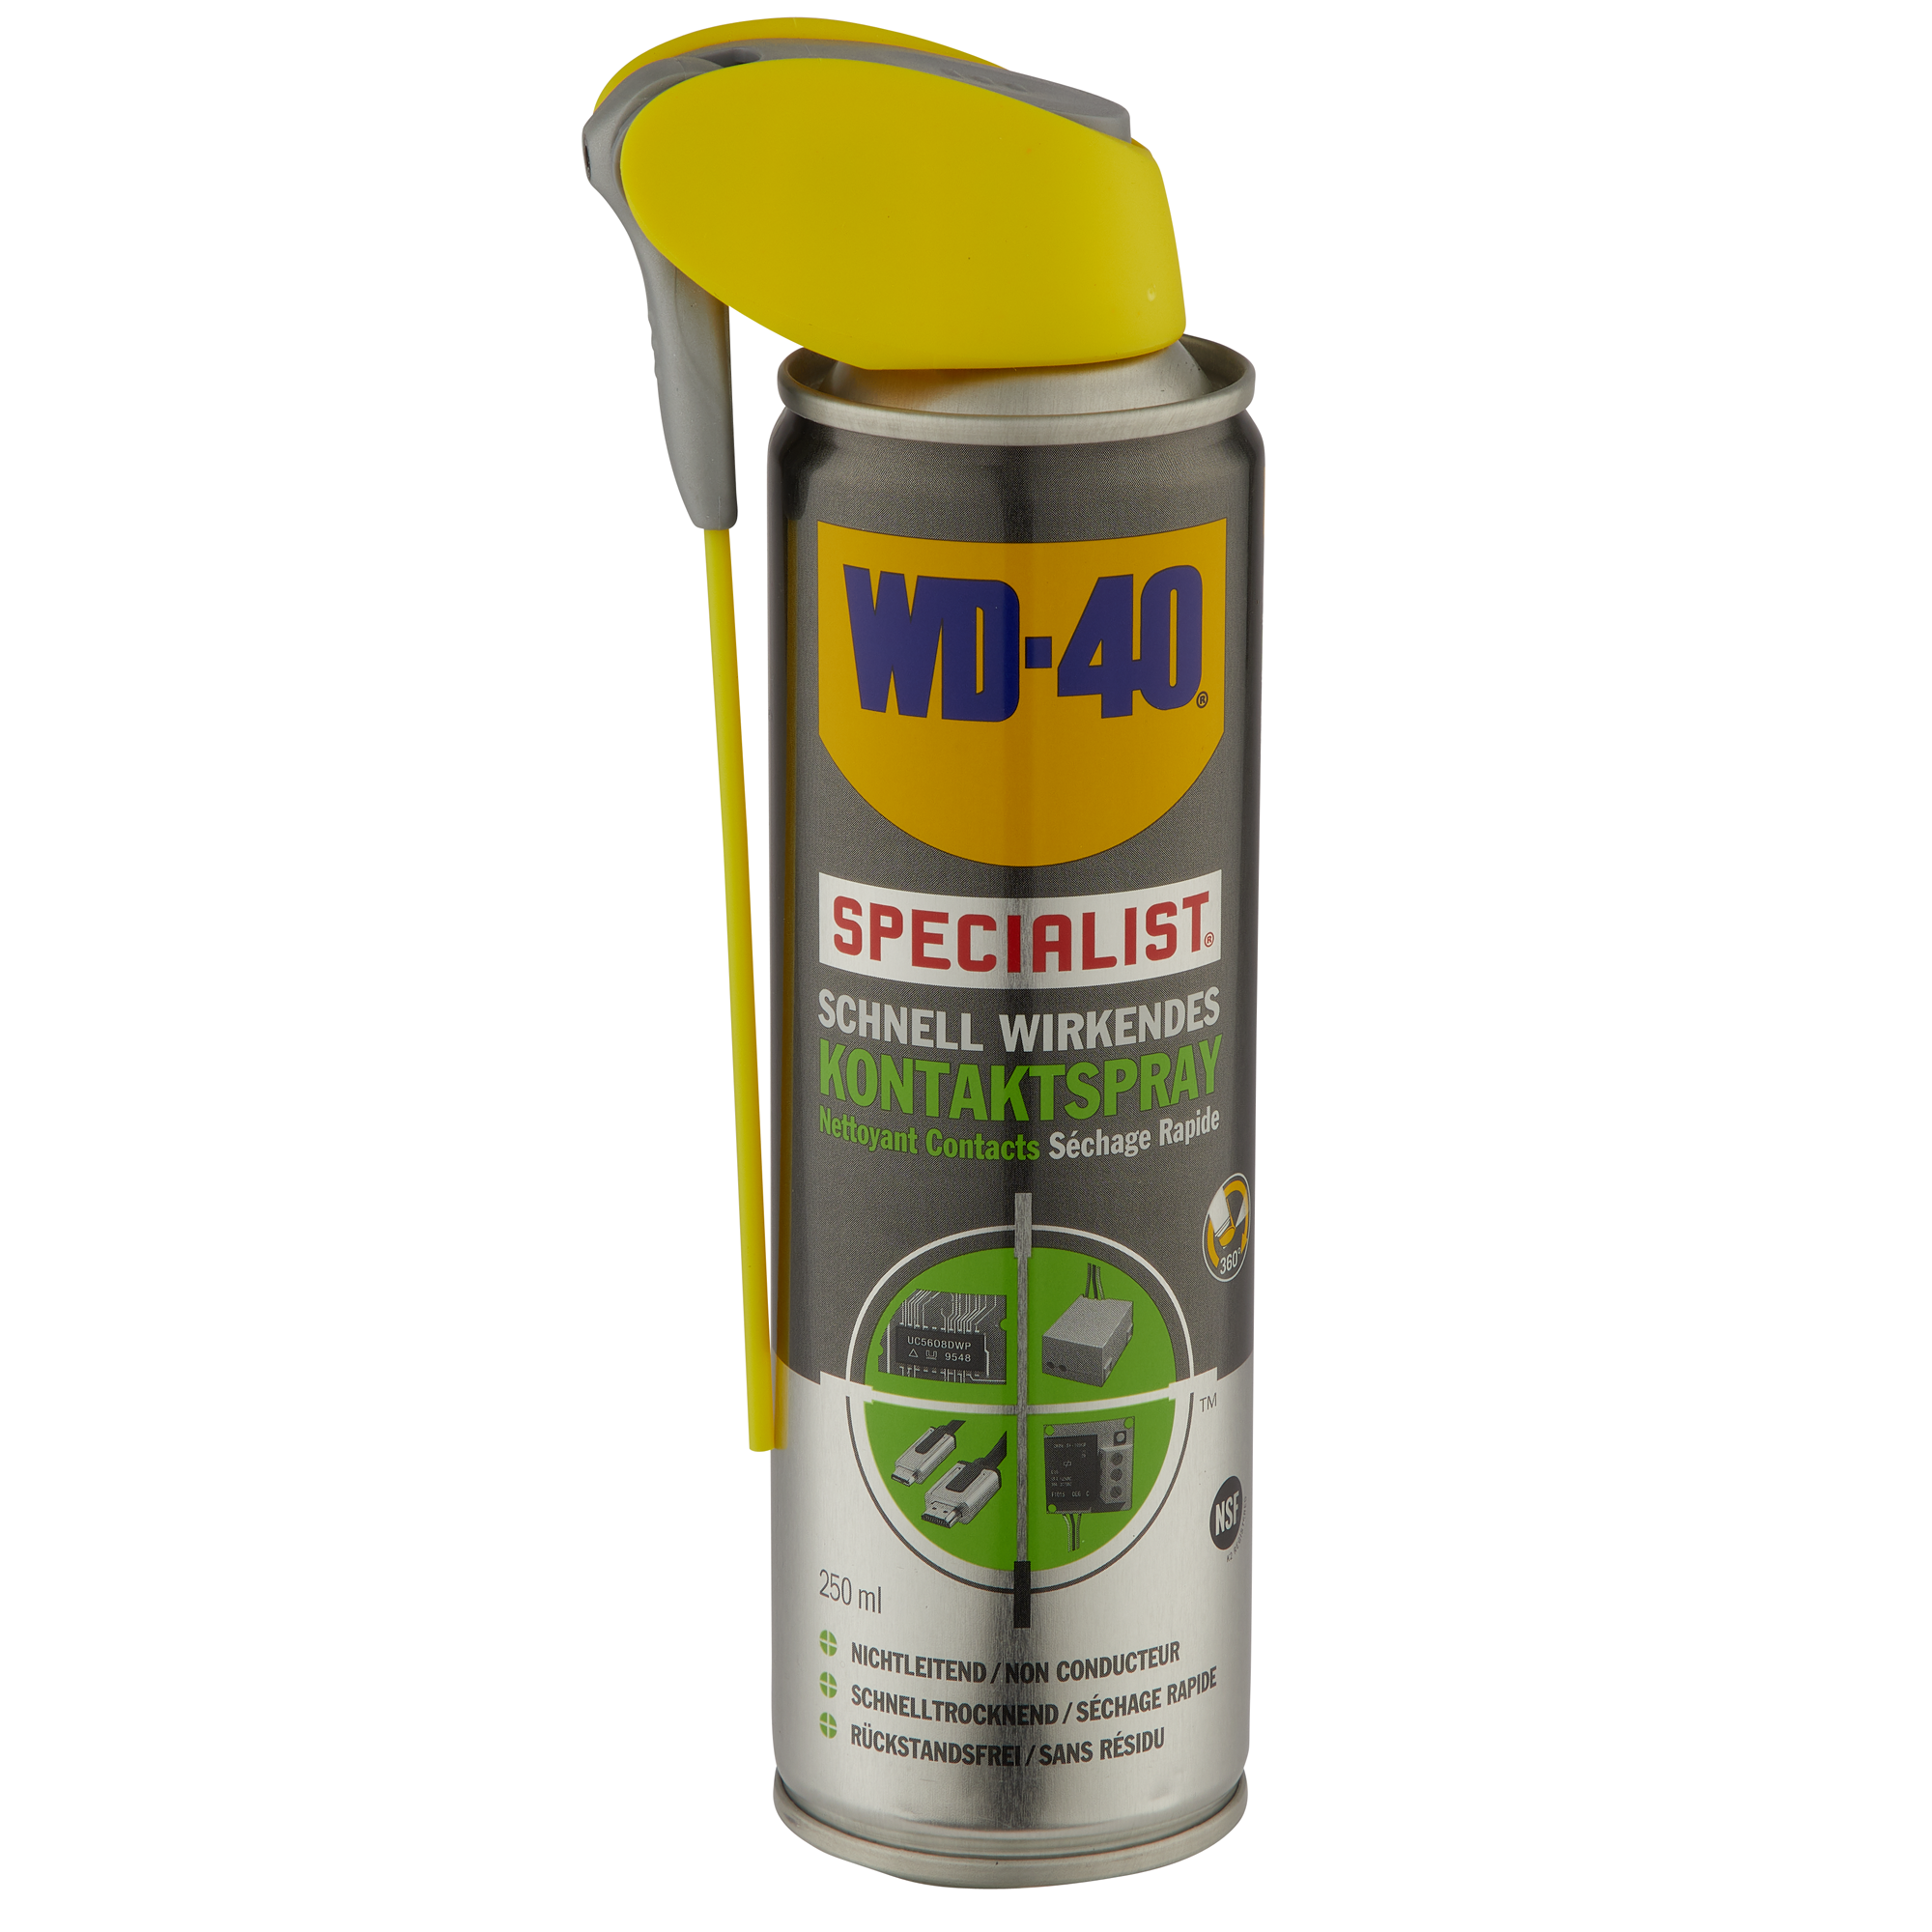 WD-40 WD-40 Specialist - Kontaktspray, Typ Reiniger für elektrische